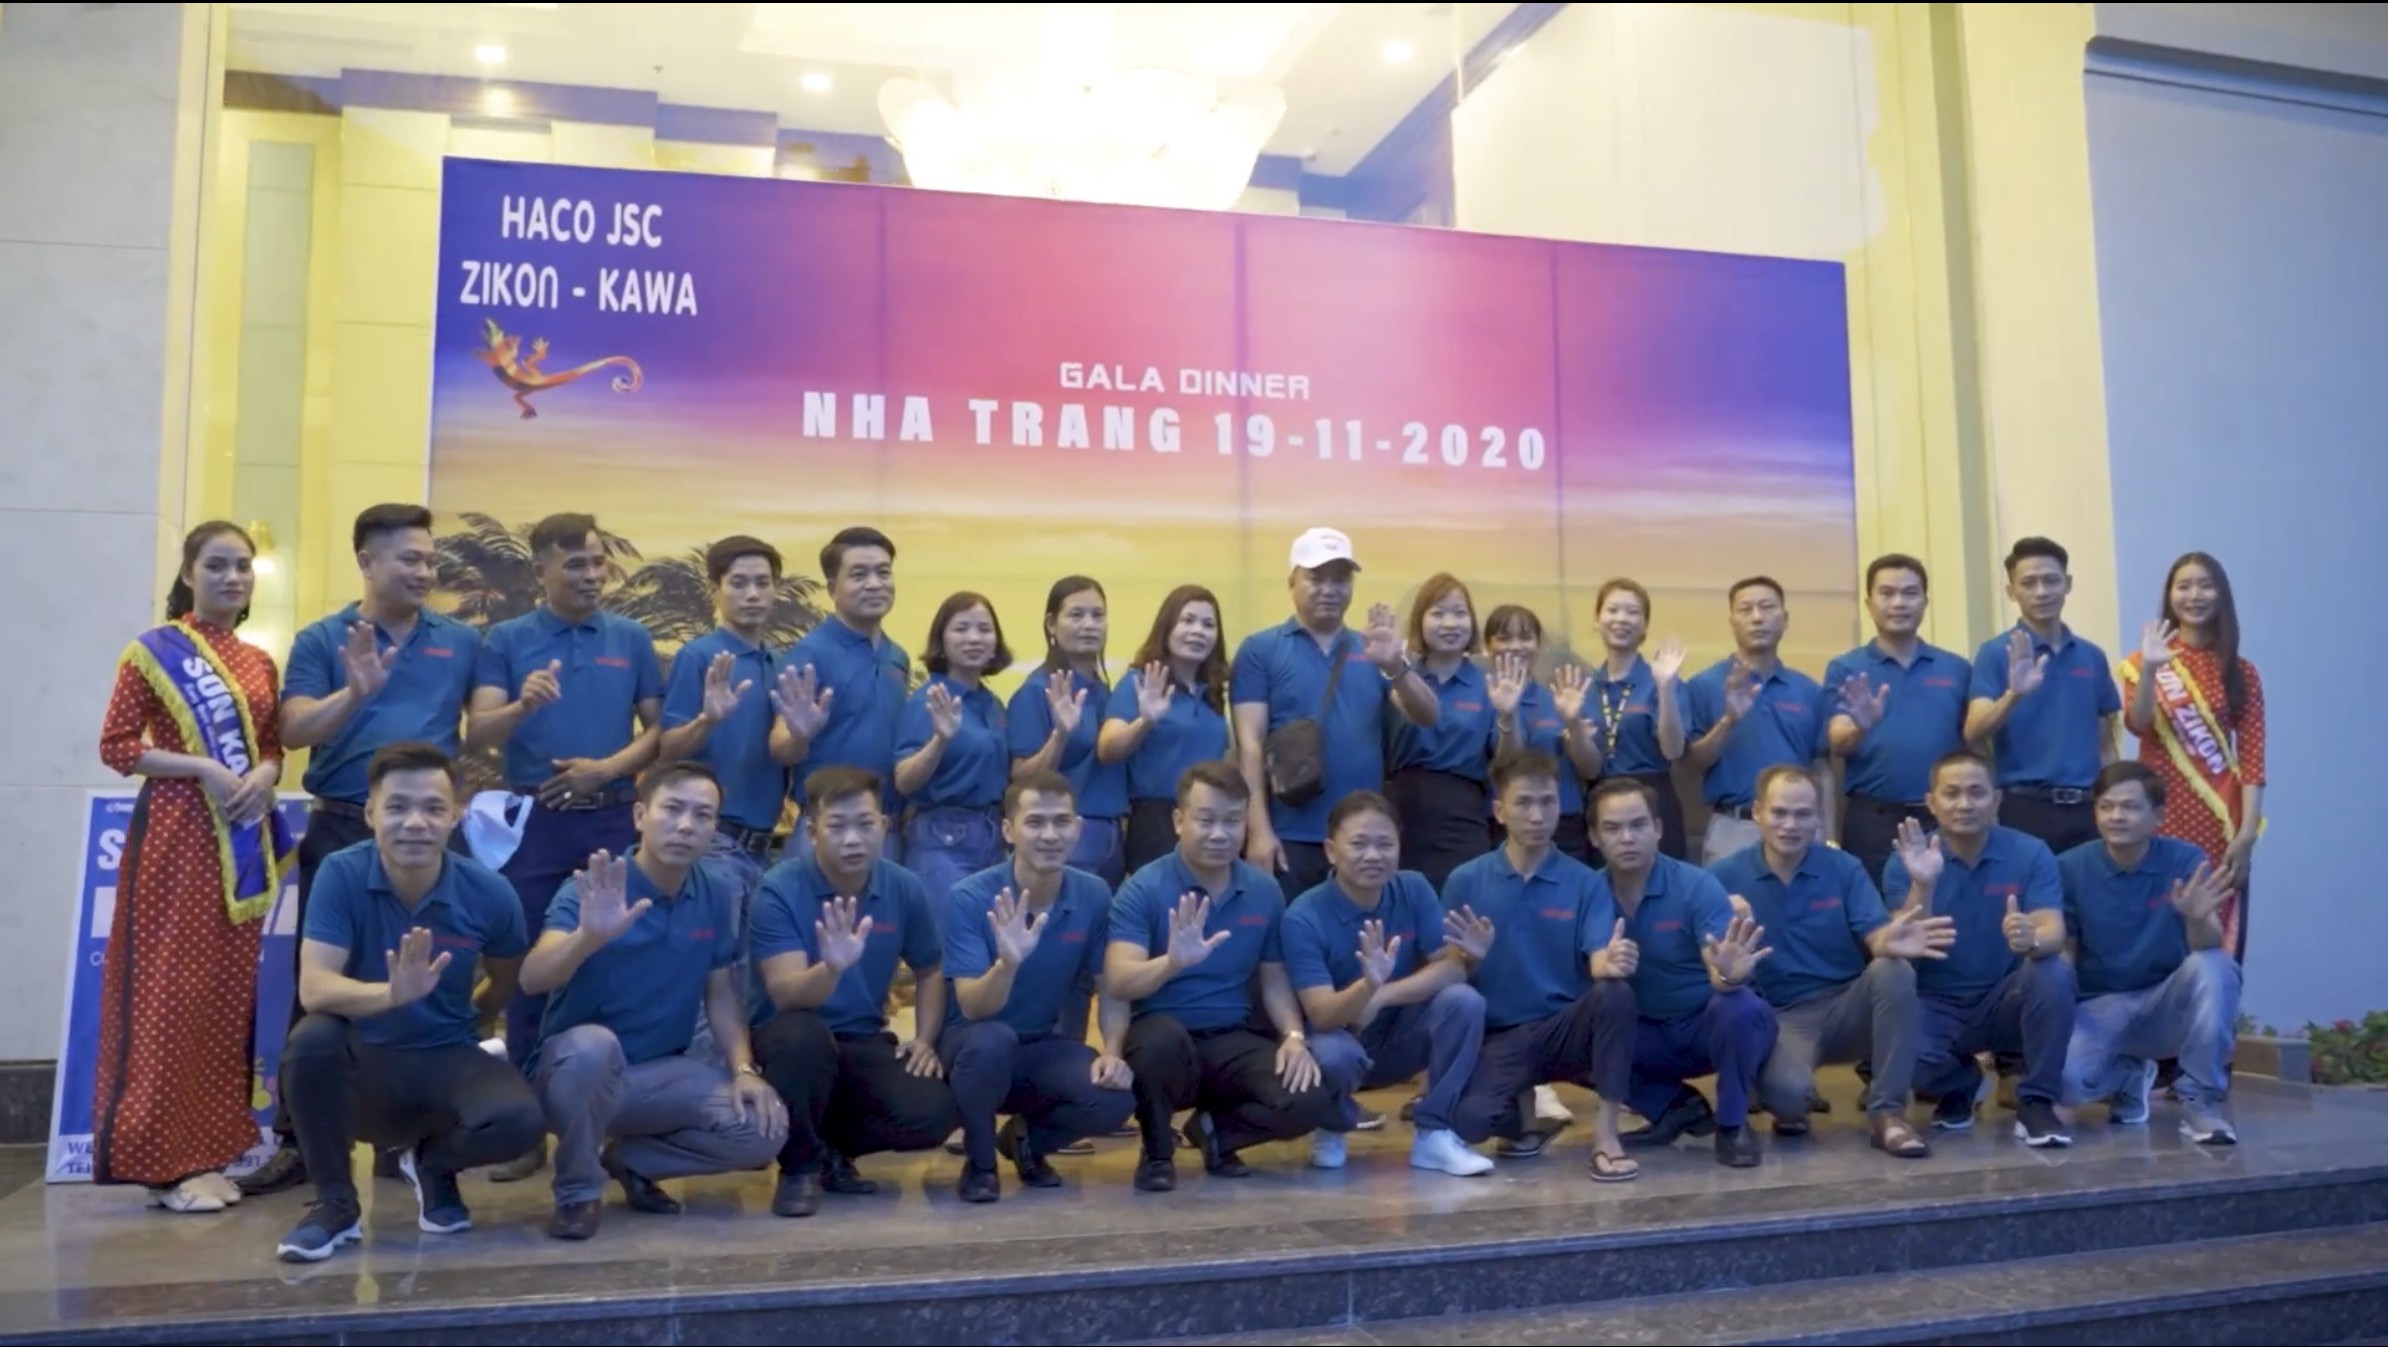 Các NPP Sơn ZIKON,KAWA Du lịch Đảo Vinpear Nha Trang  11/2020 - Cuộc họp mặt của người chiến thắng